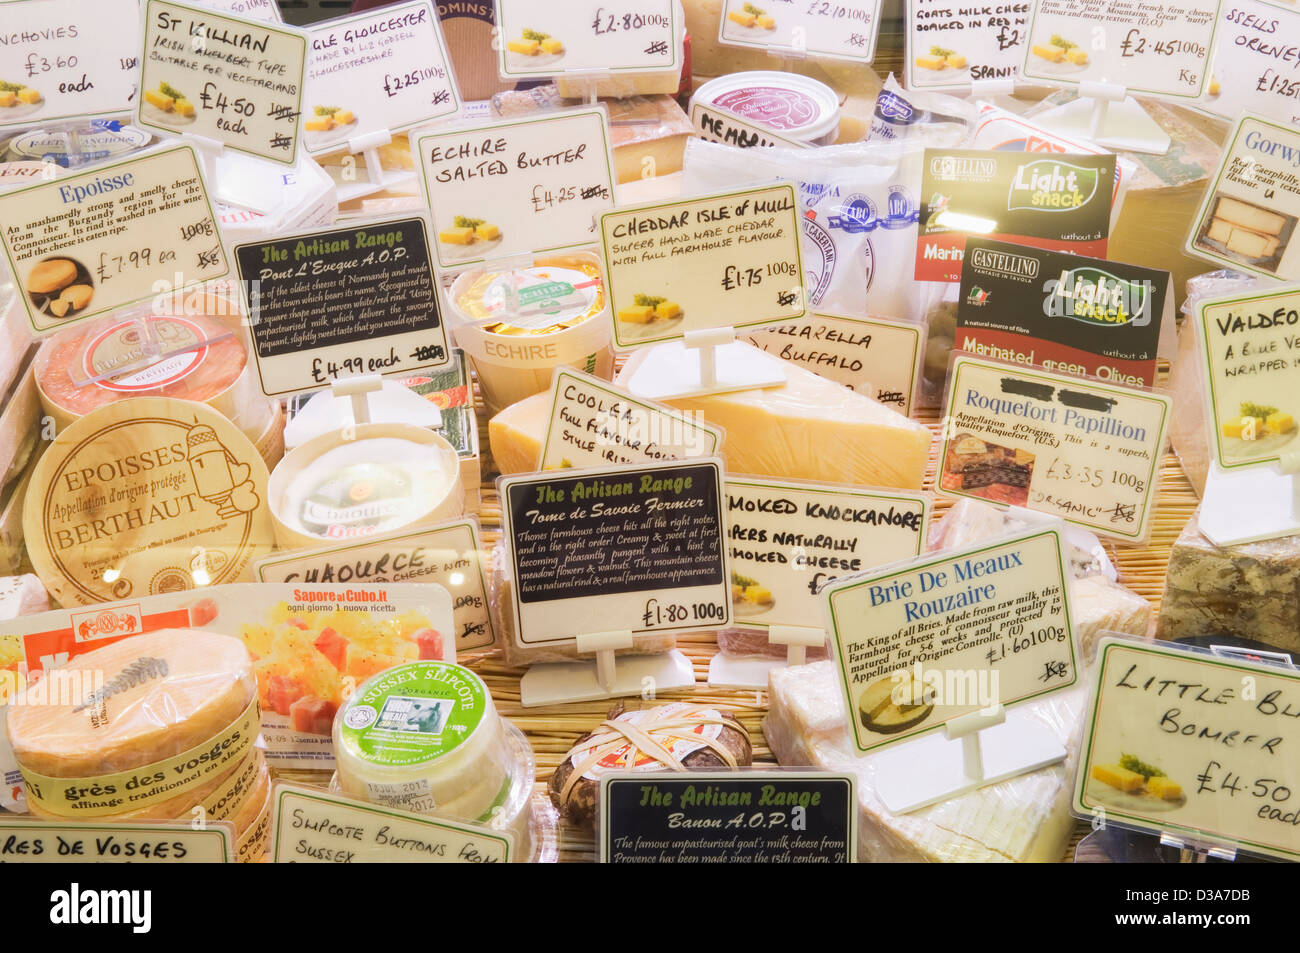 Selezione di formaggi presso un negozio di specialità gastronomiche contatore. Foto Stock